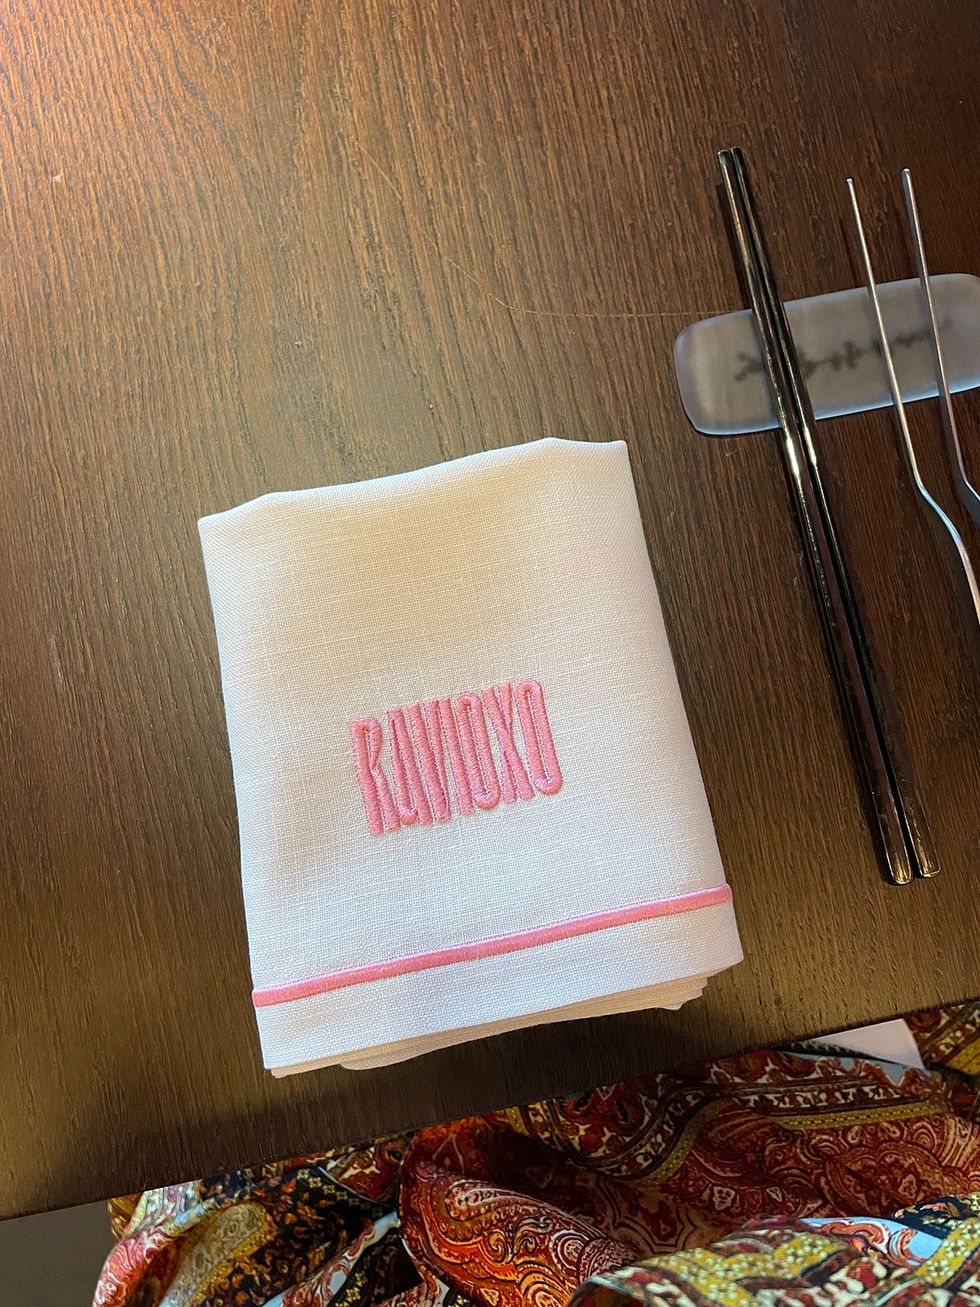 detalle de servilleta en el restaurante ravioxo